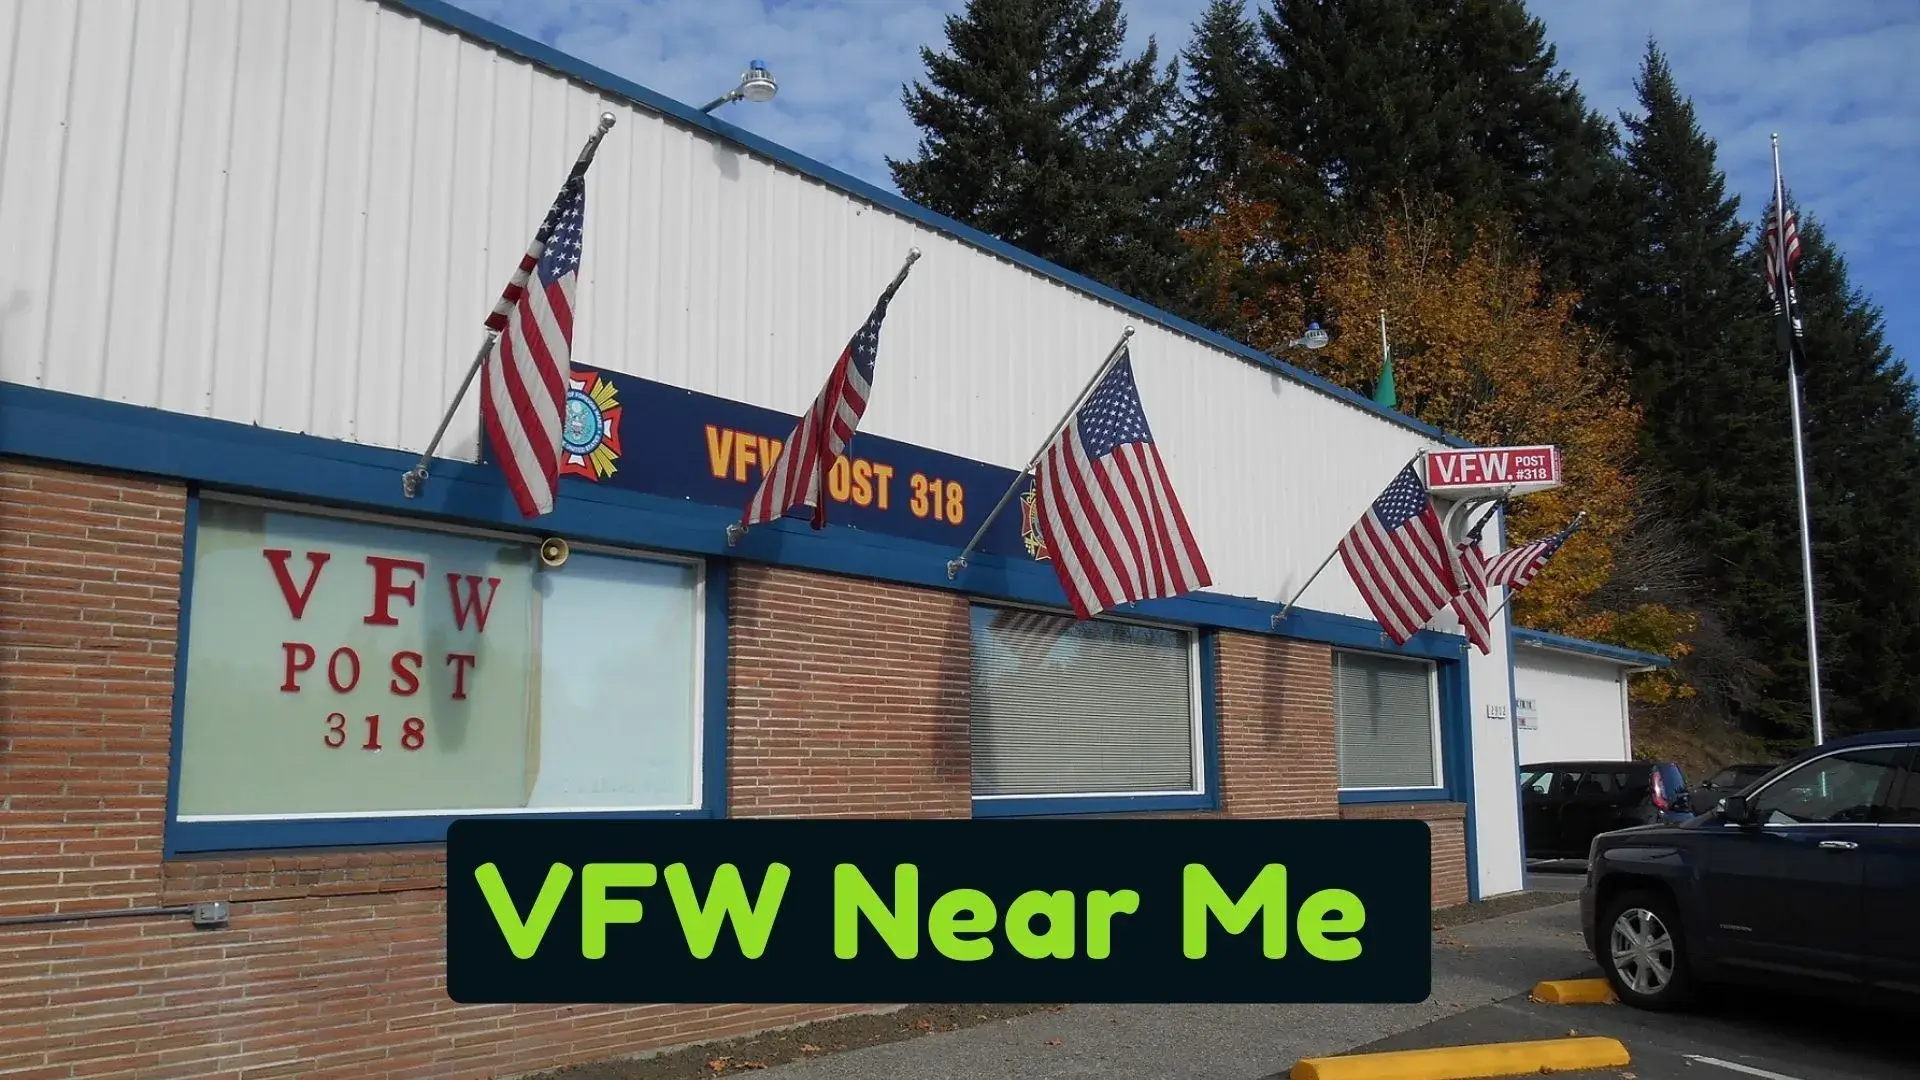 VFW Near Me - Location, Hours - open-near-me.com